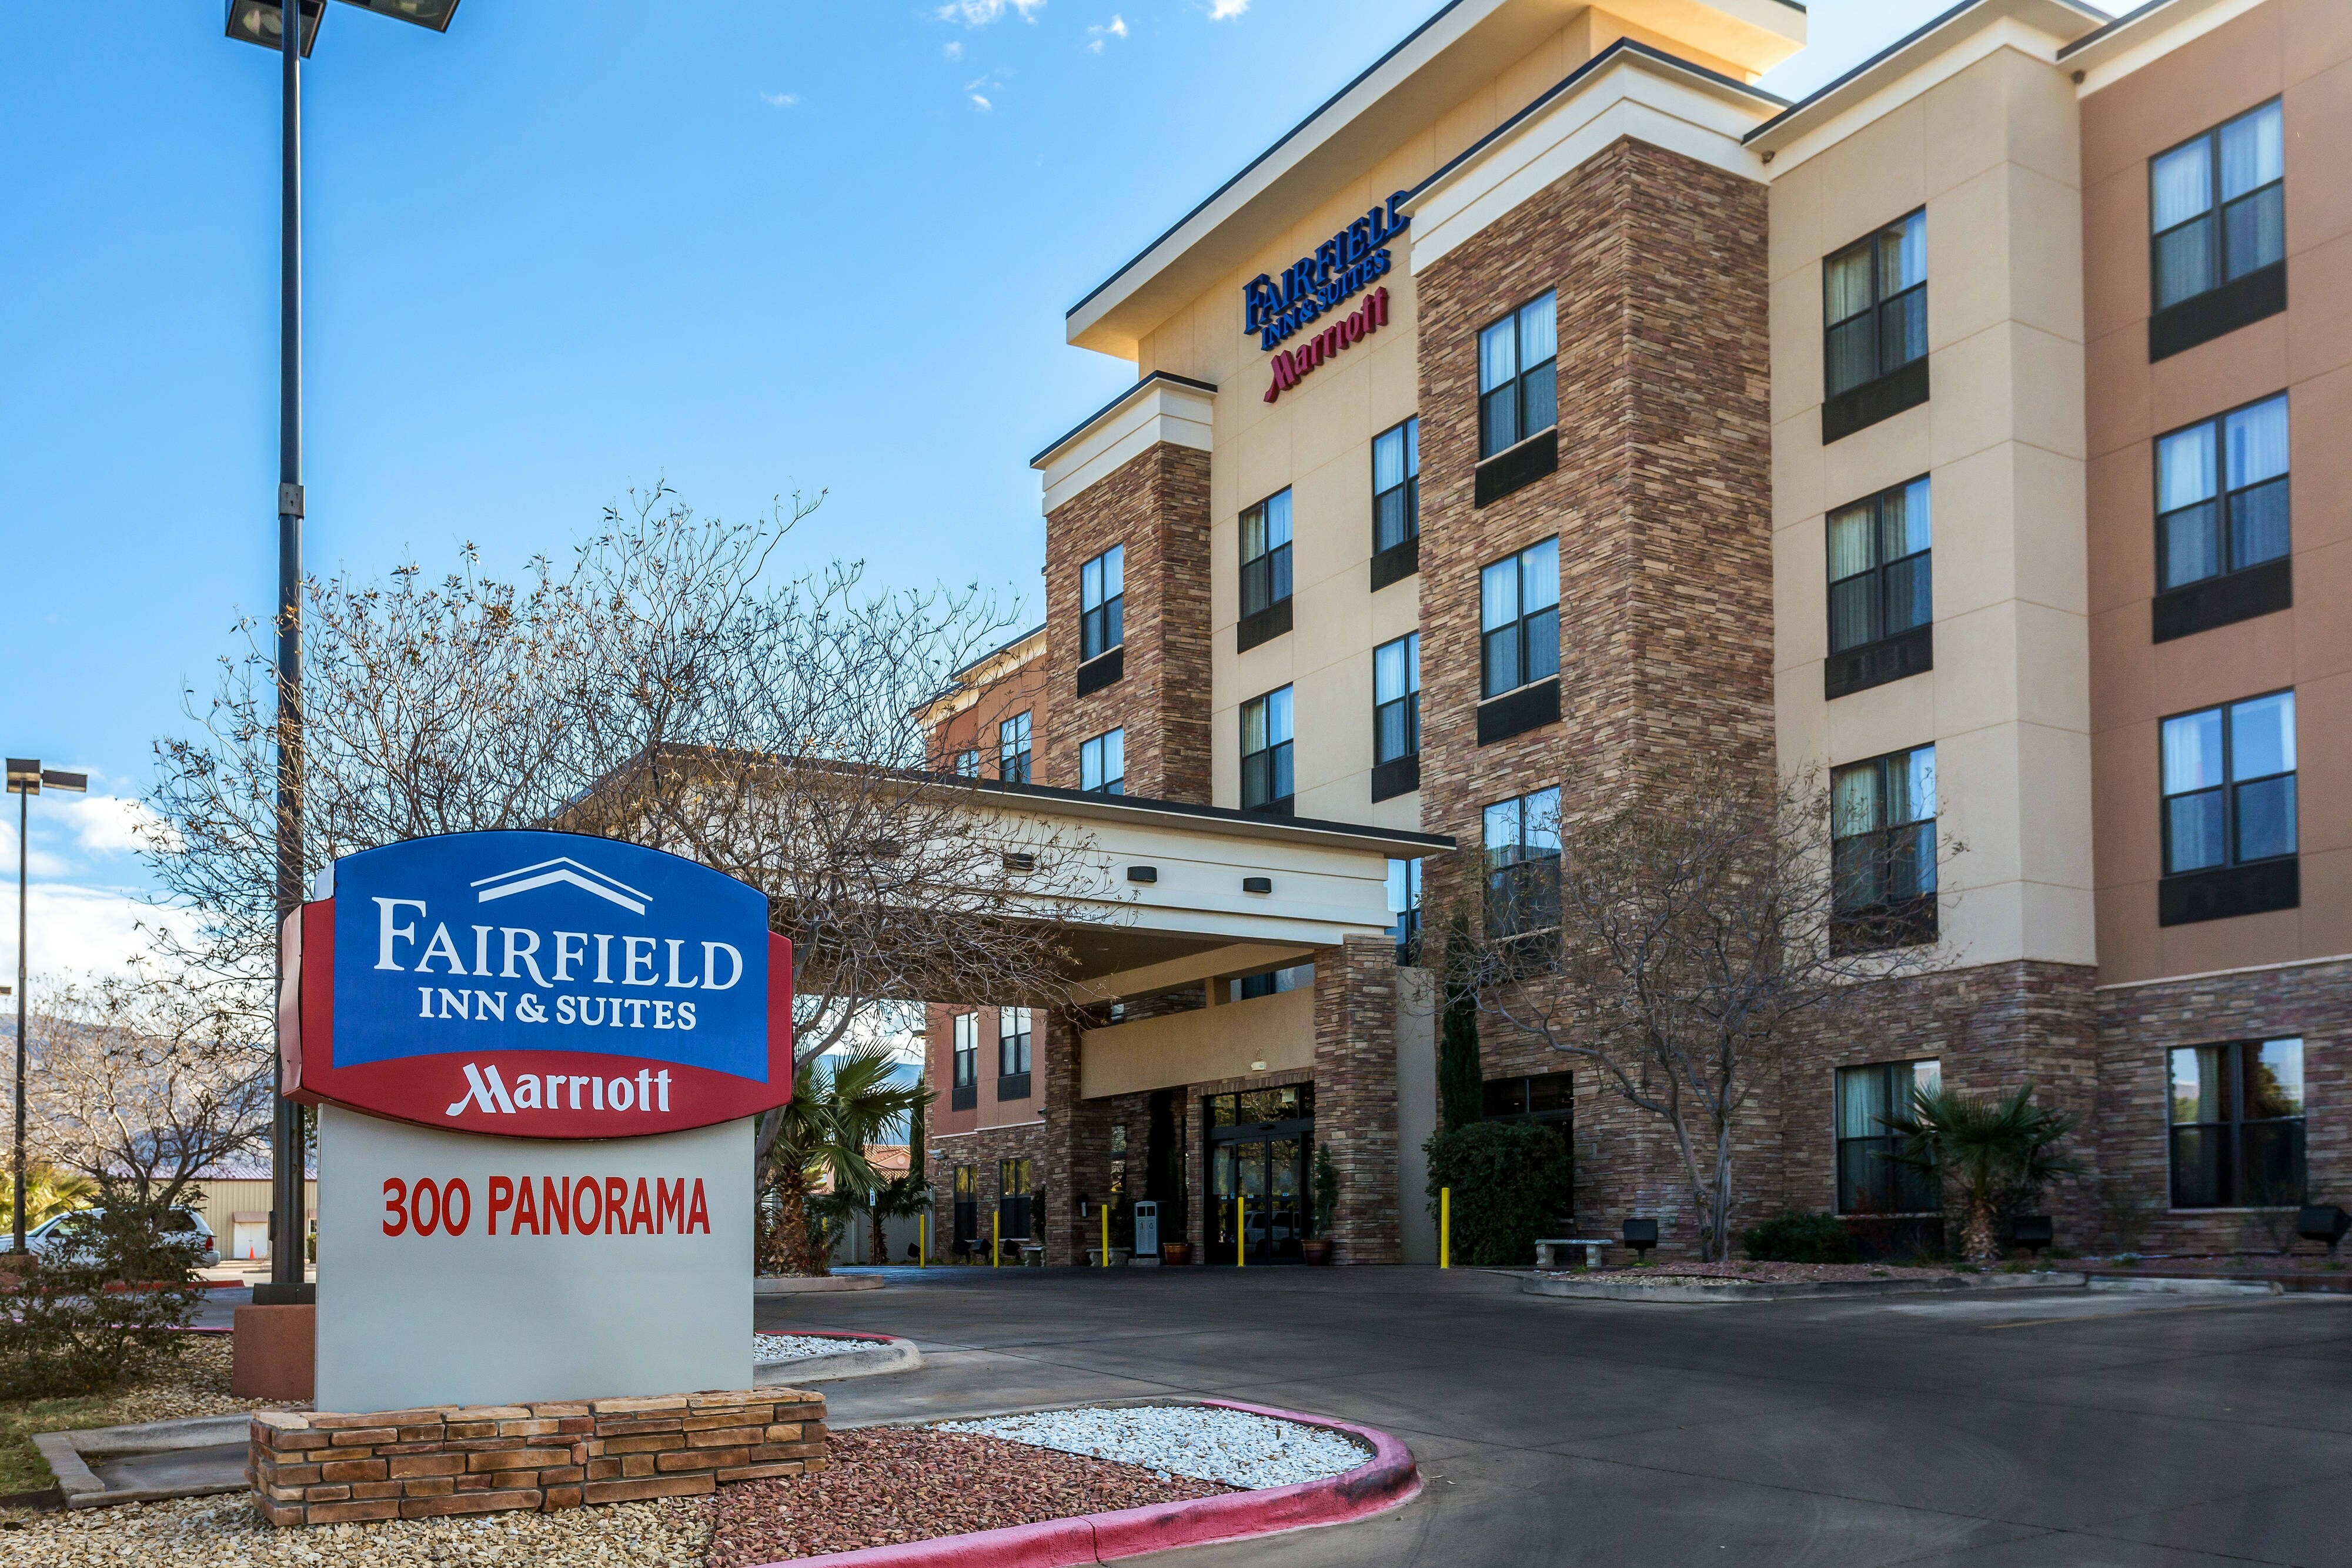 Photo of Fairfield Inn & Suites Alamogordo, Alamogordo, NM